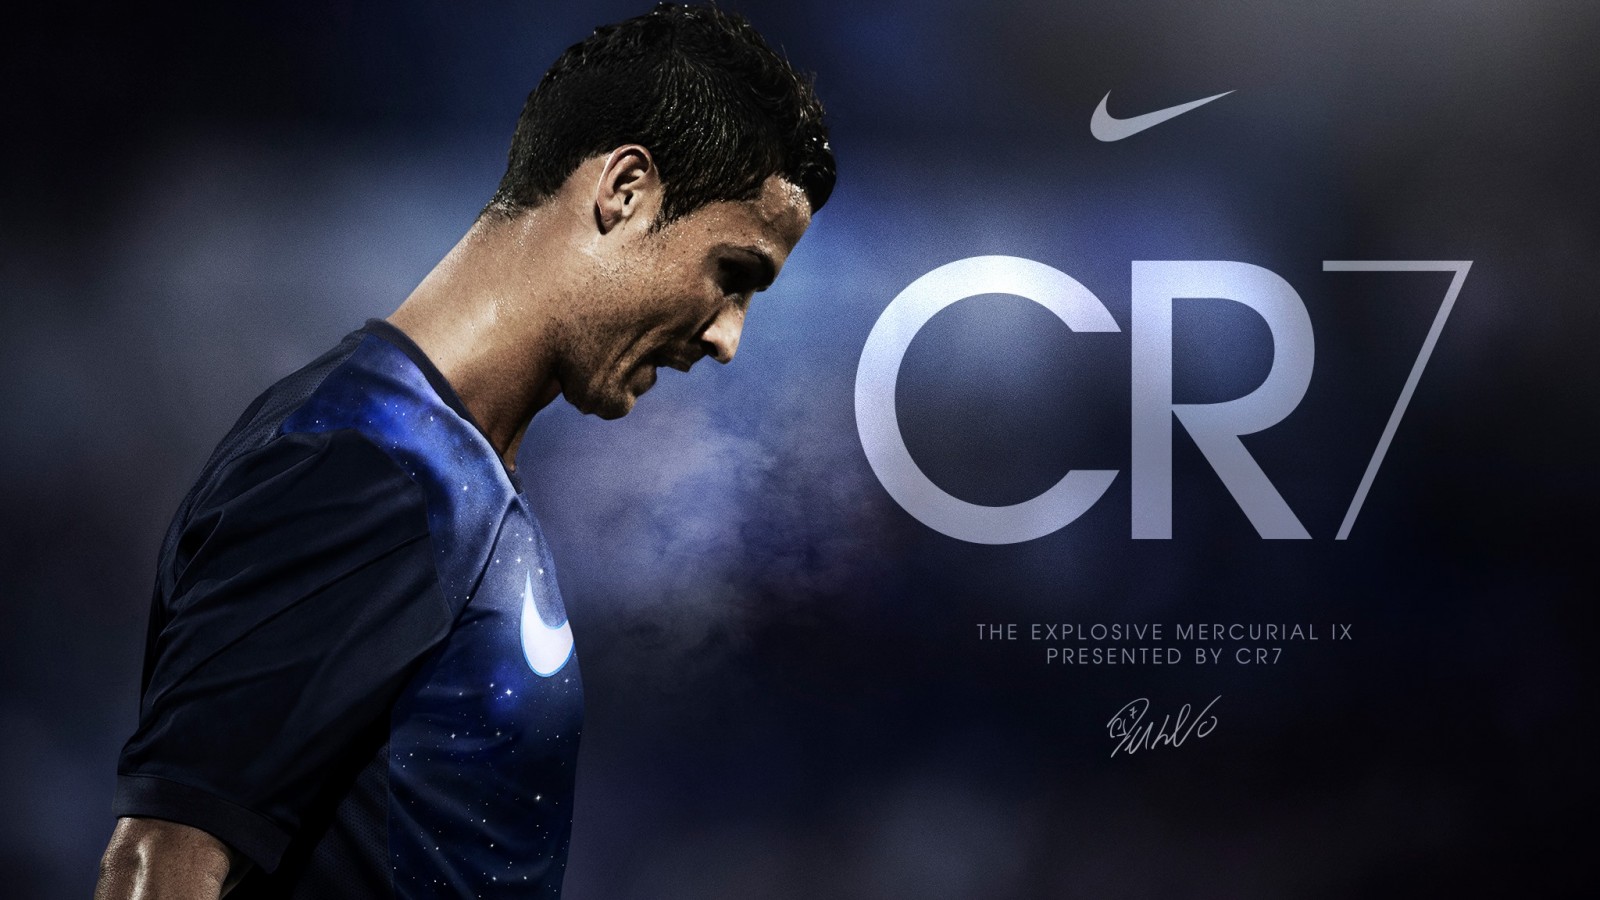 Cristiano Ronaldo Wallpaper 2014 Wallpaper idwallpics.com